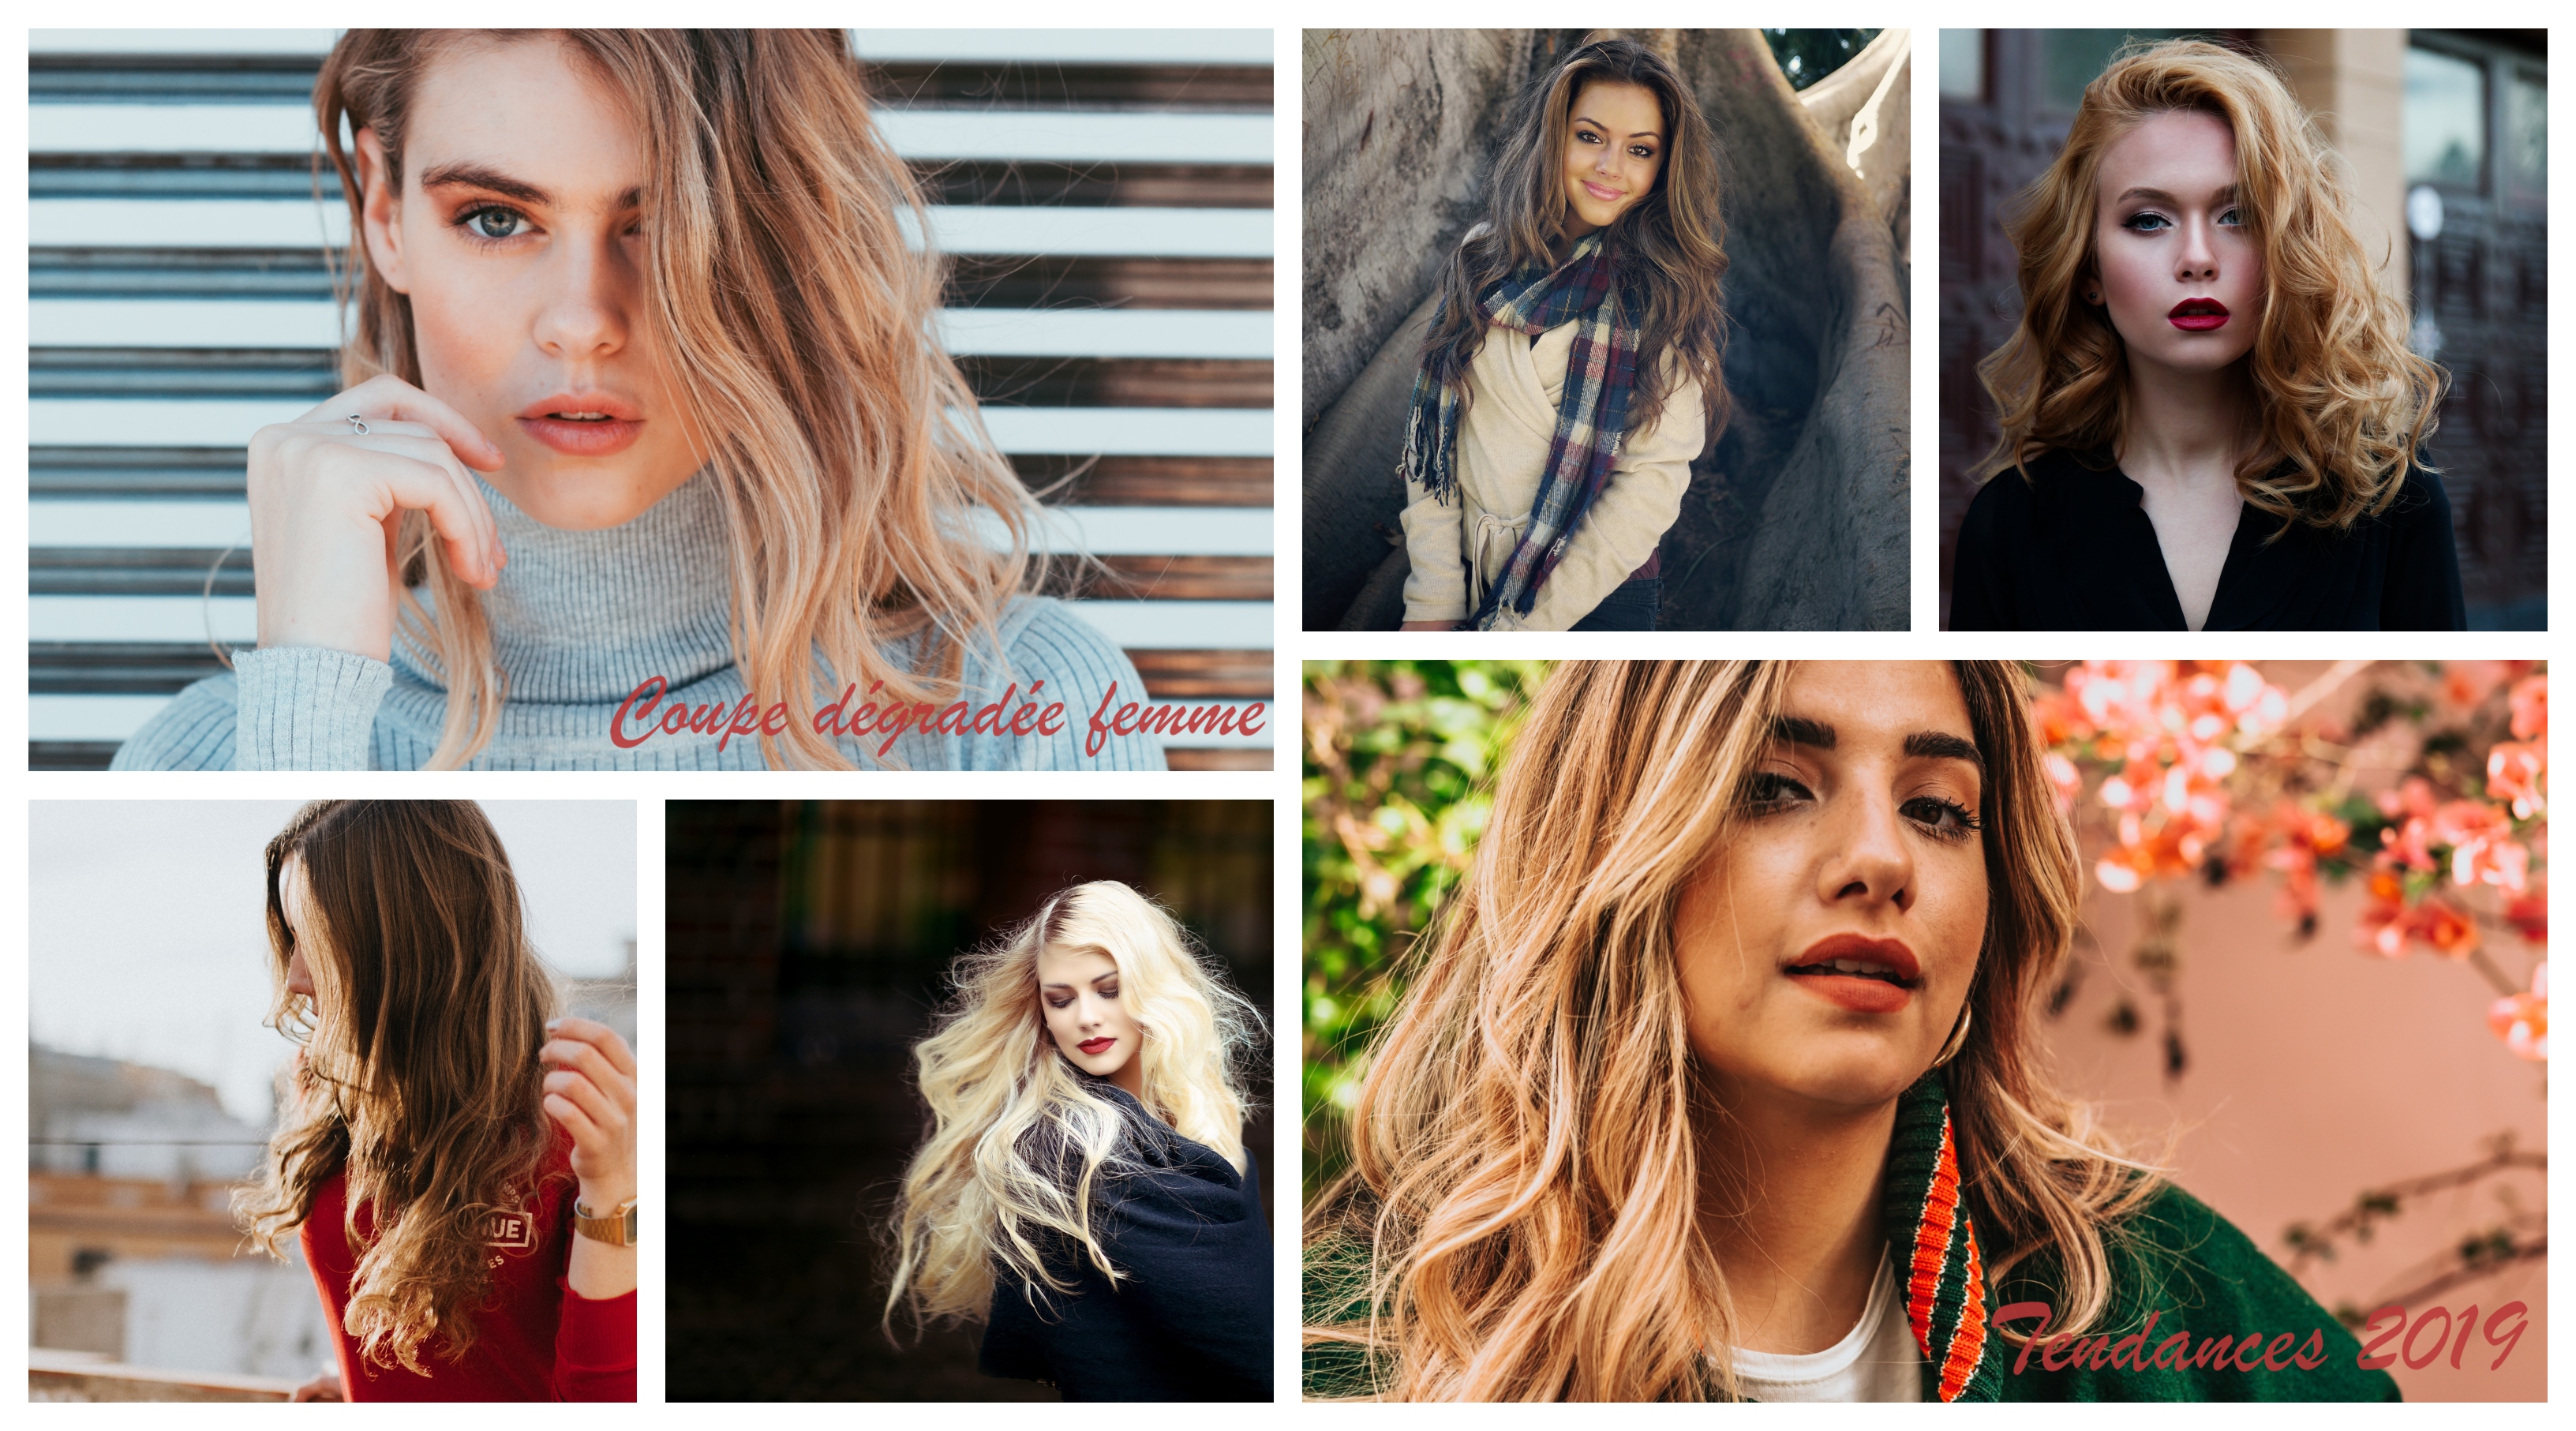 Quelles sont les meilleures idée pour une coupe dégradée femme, moderne coupe de cheveux, collage de photos 2019 meilleures tendances cheveux longs